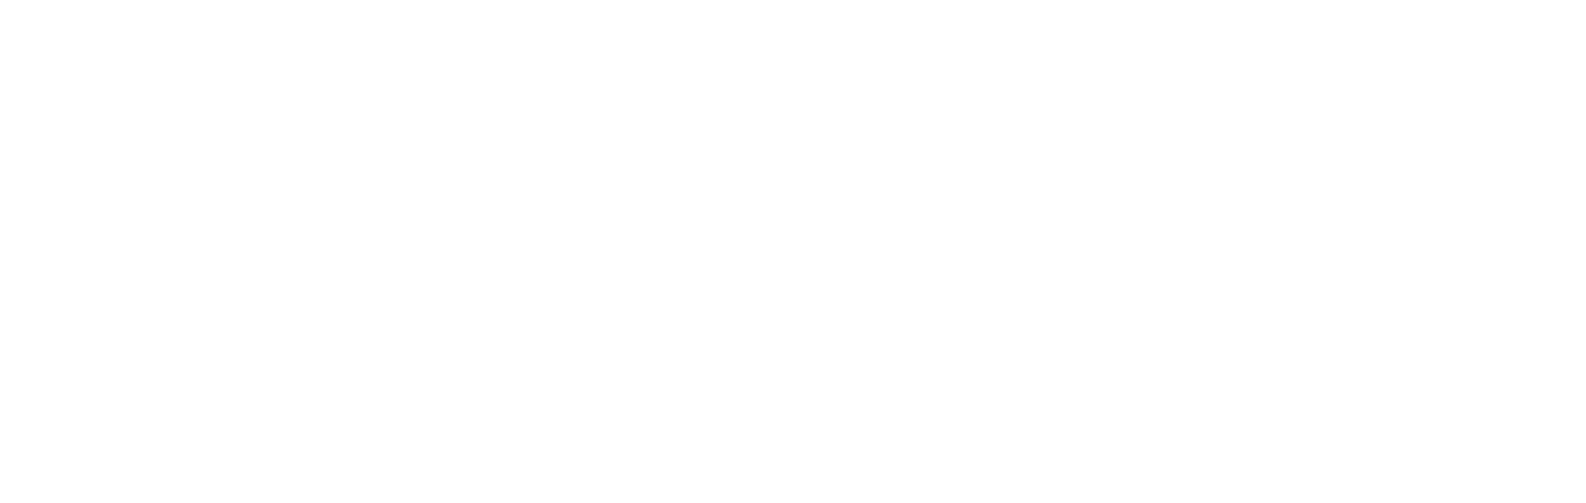 Art League RI